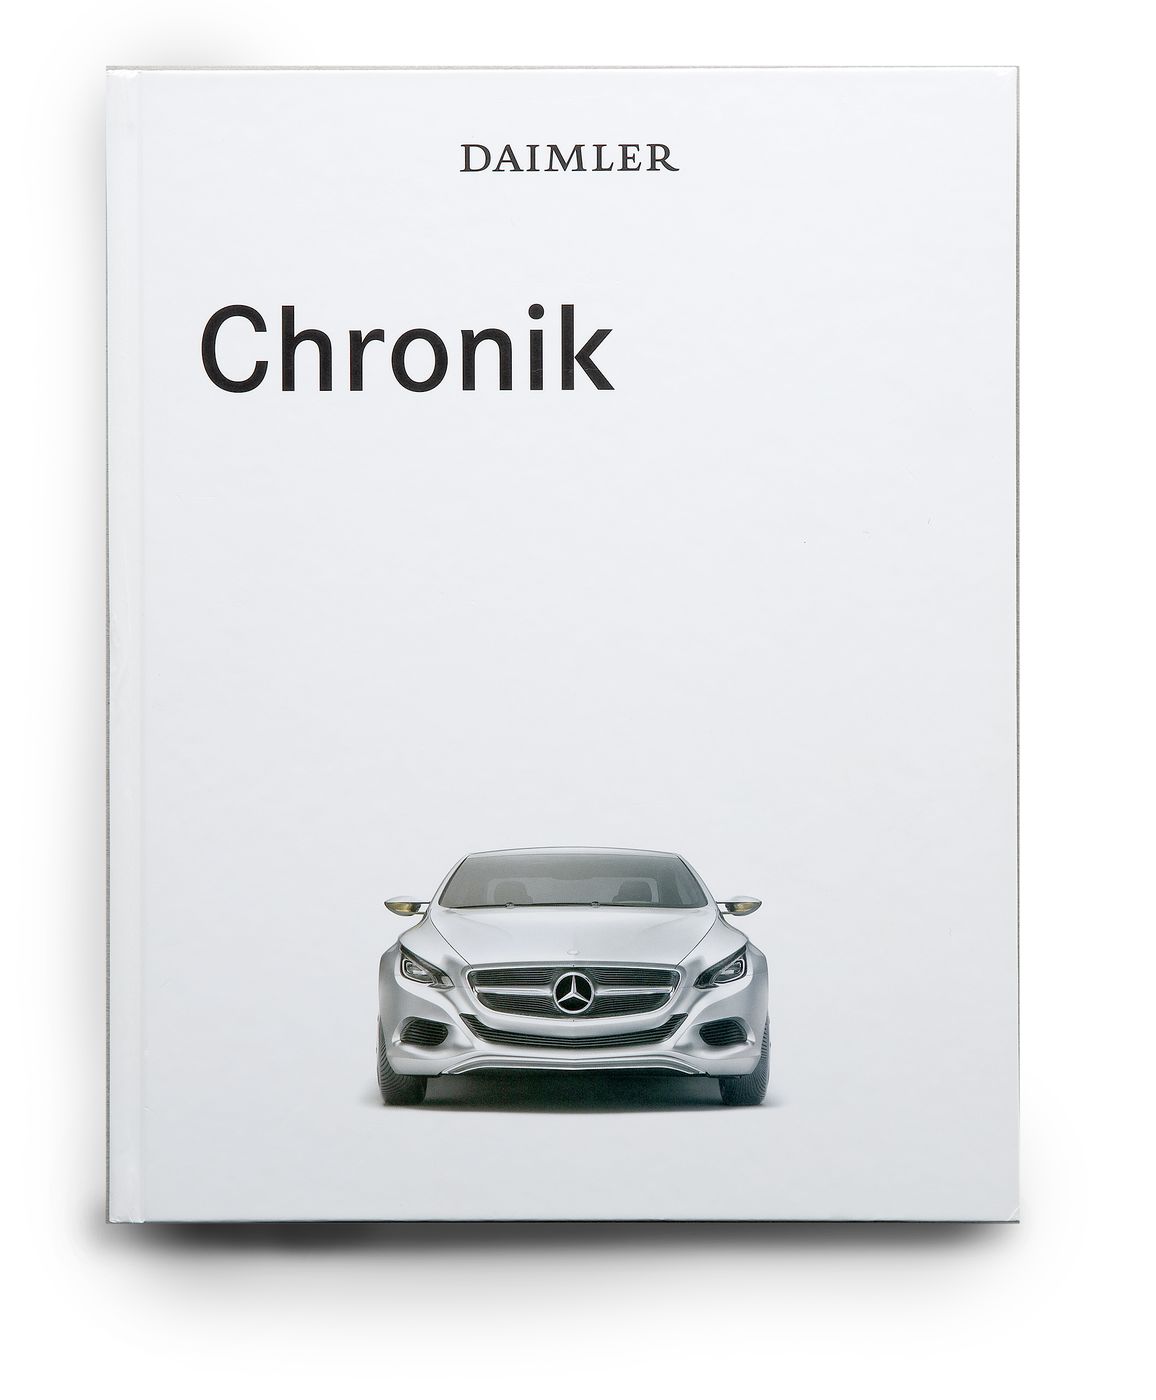 Daimler Chronik